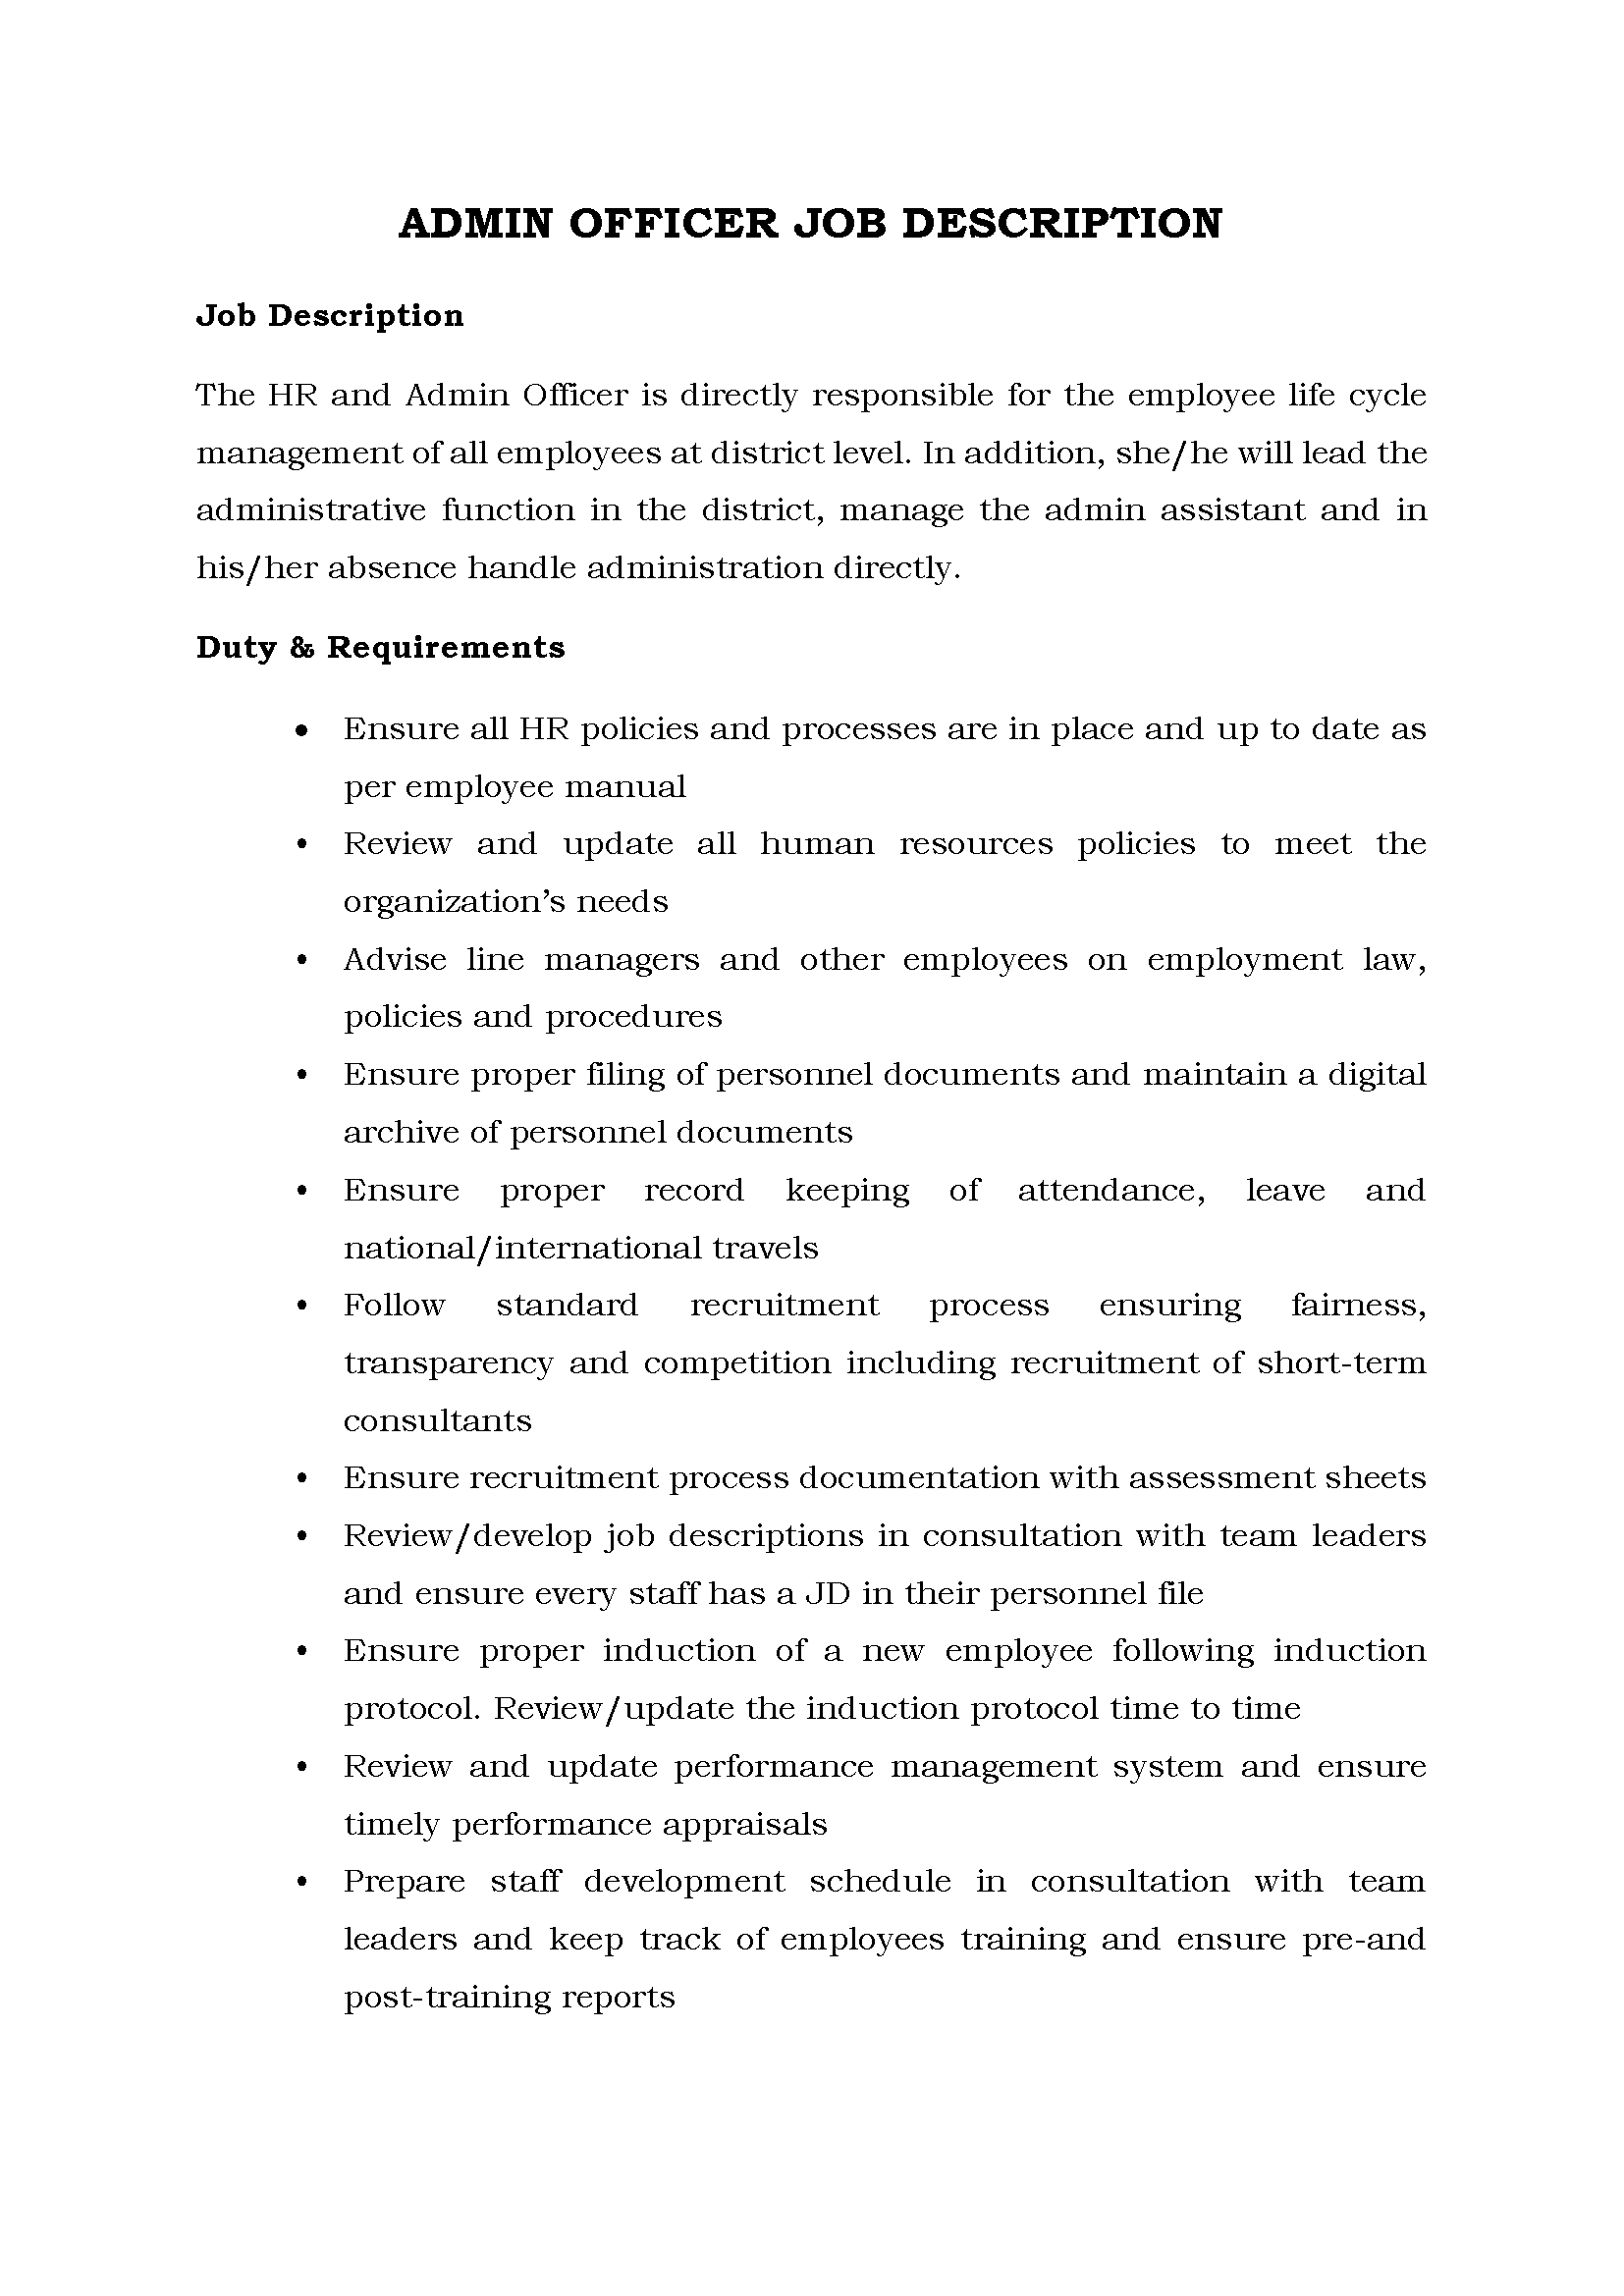 02-Admin Officer Job description